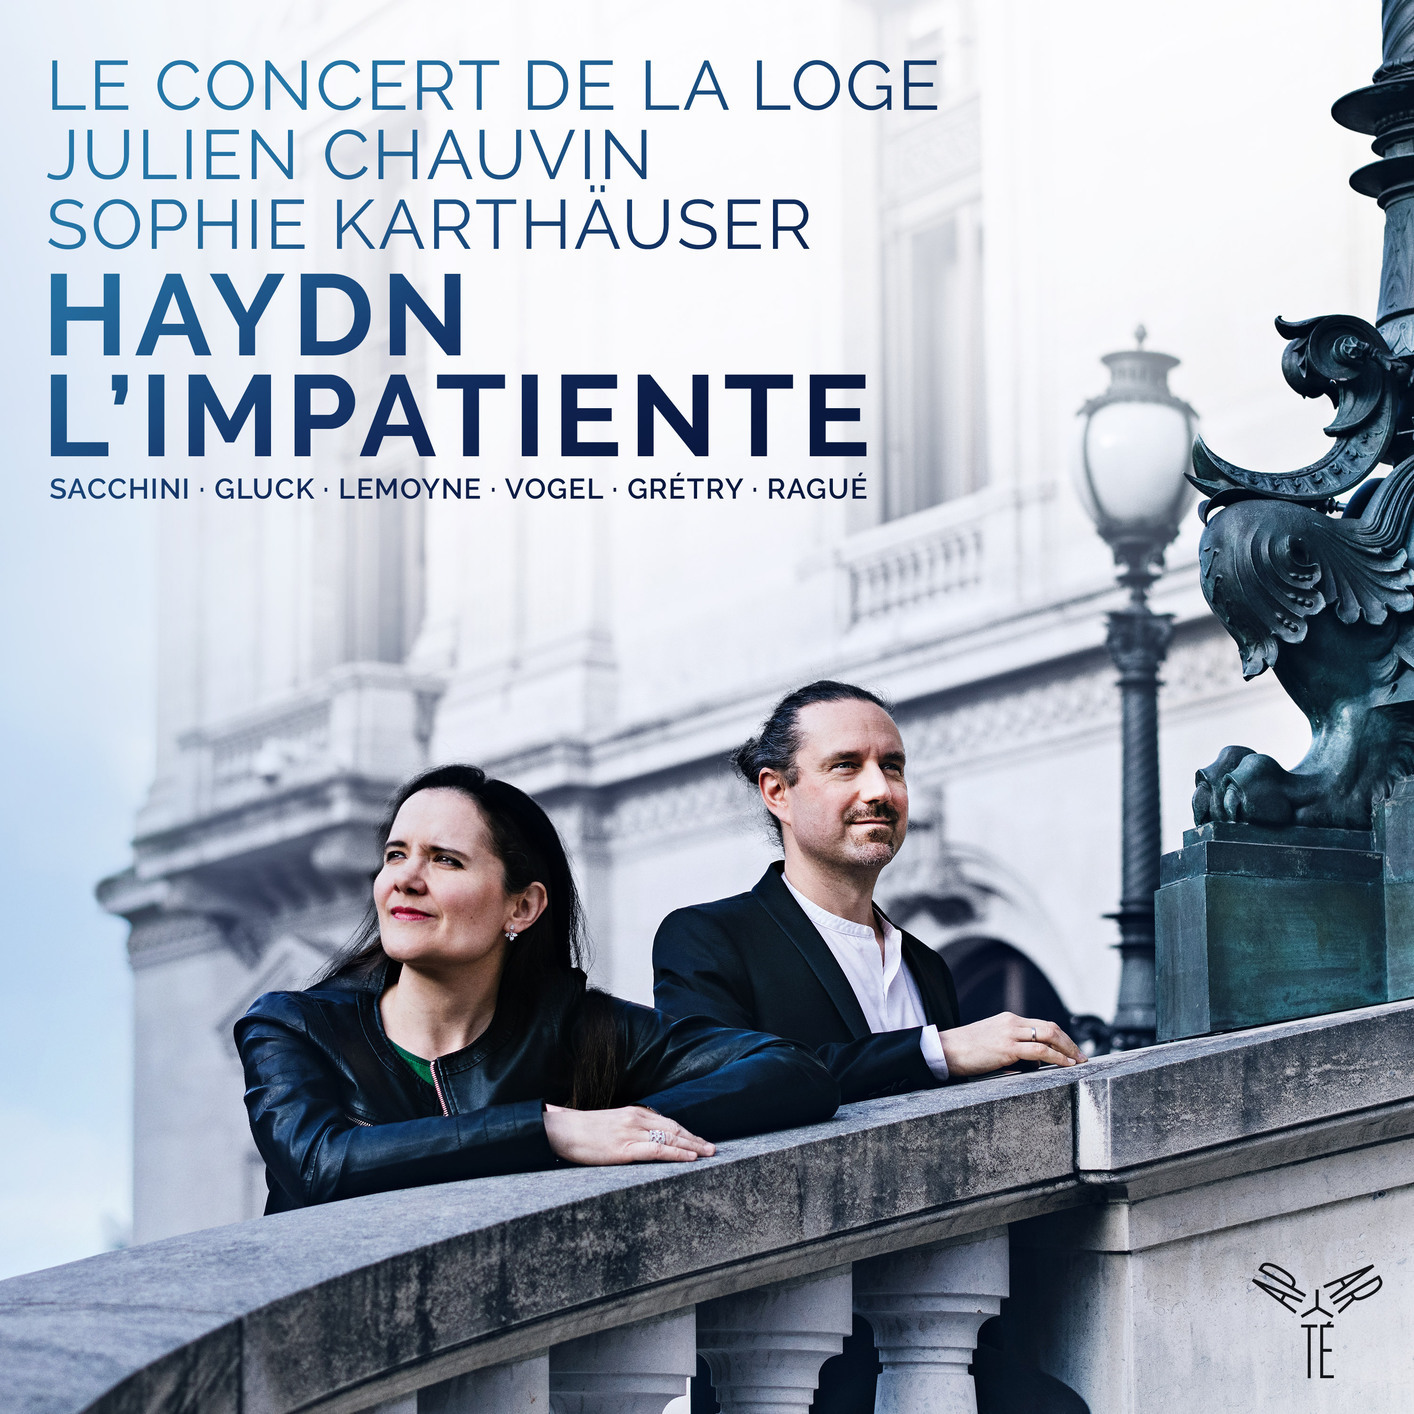 Le Concert de la Loge, Julien Chauvin and Sophie Karthauser - Haydn: L’Impatiente (2019) [FLAC 24bit/96kHz]